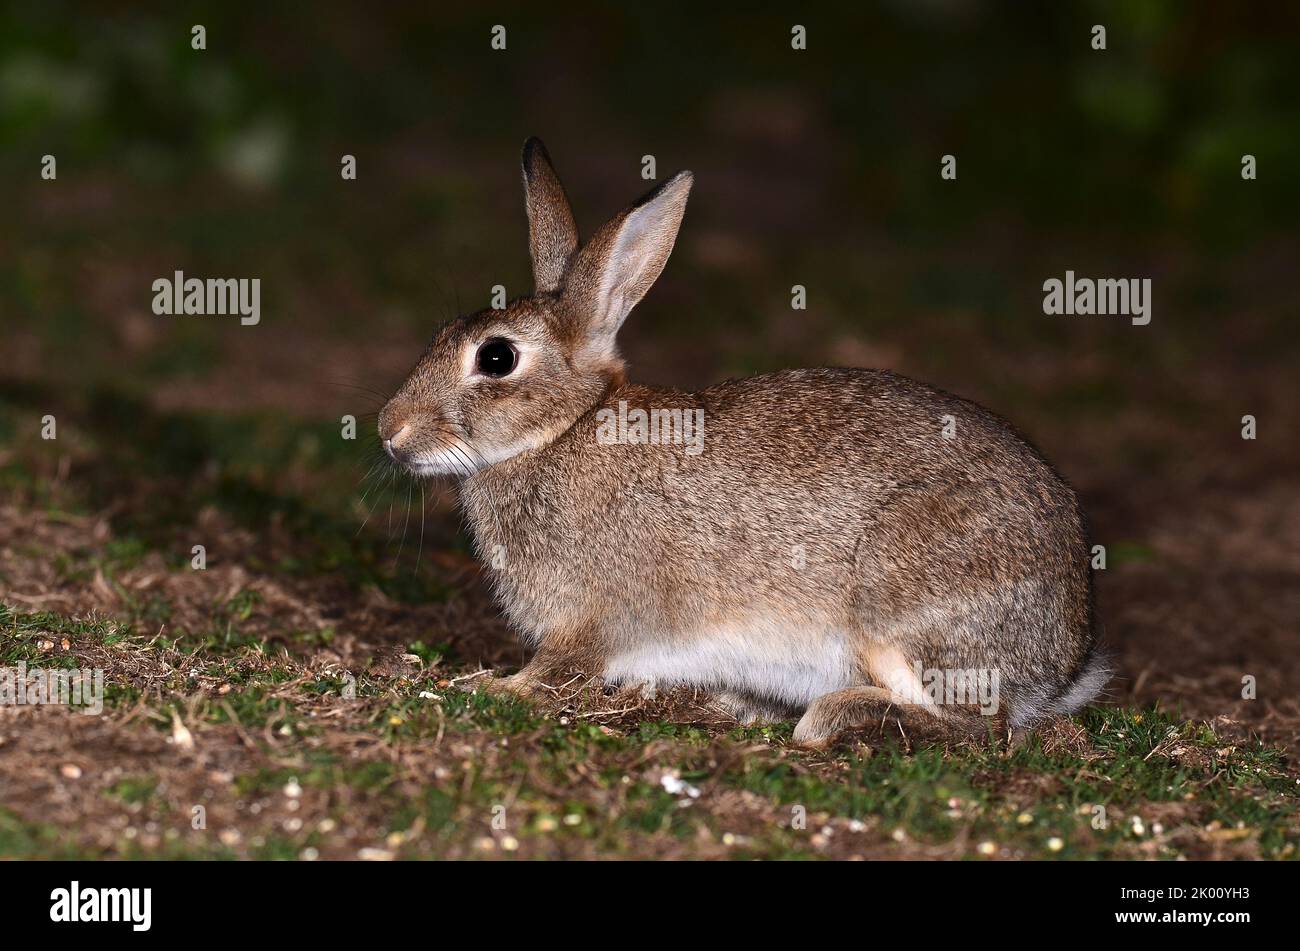 adulto conejo alimentando en cebo de maíz en el campo en la noche Foto de stock